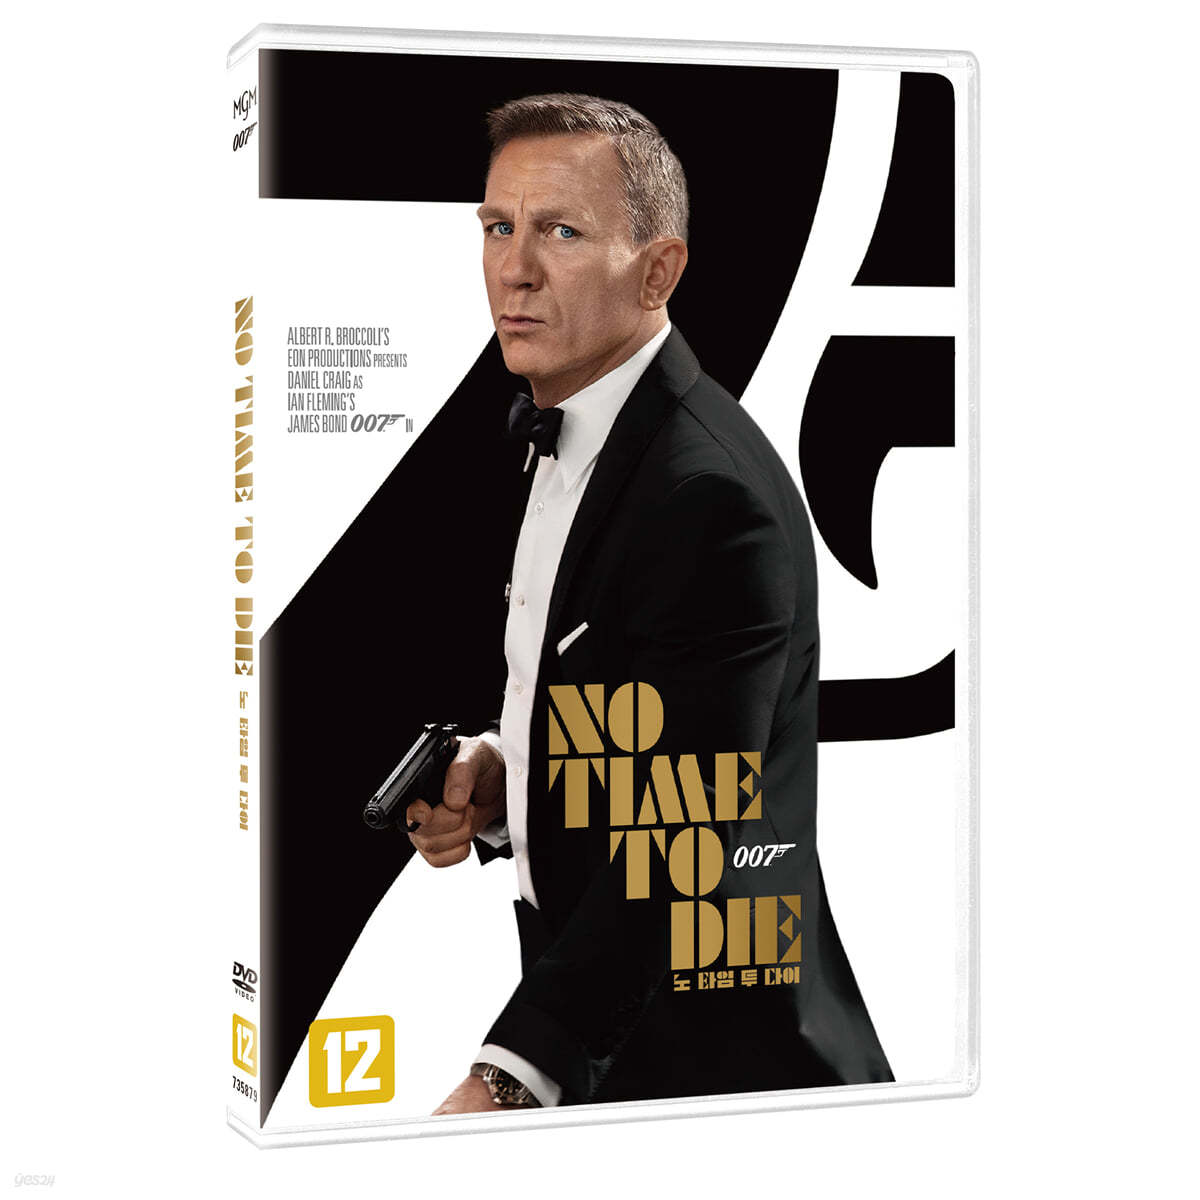 007 노 타임 투 다이: 콜렉터스 에디션 (1Disc, 일반판)